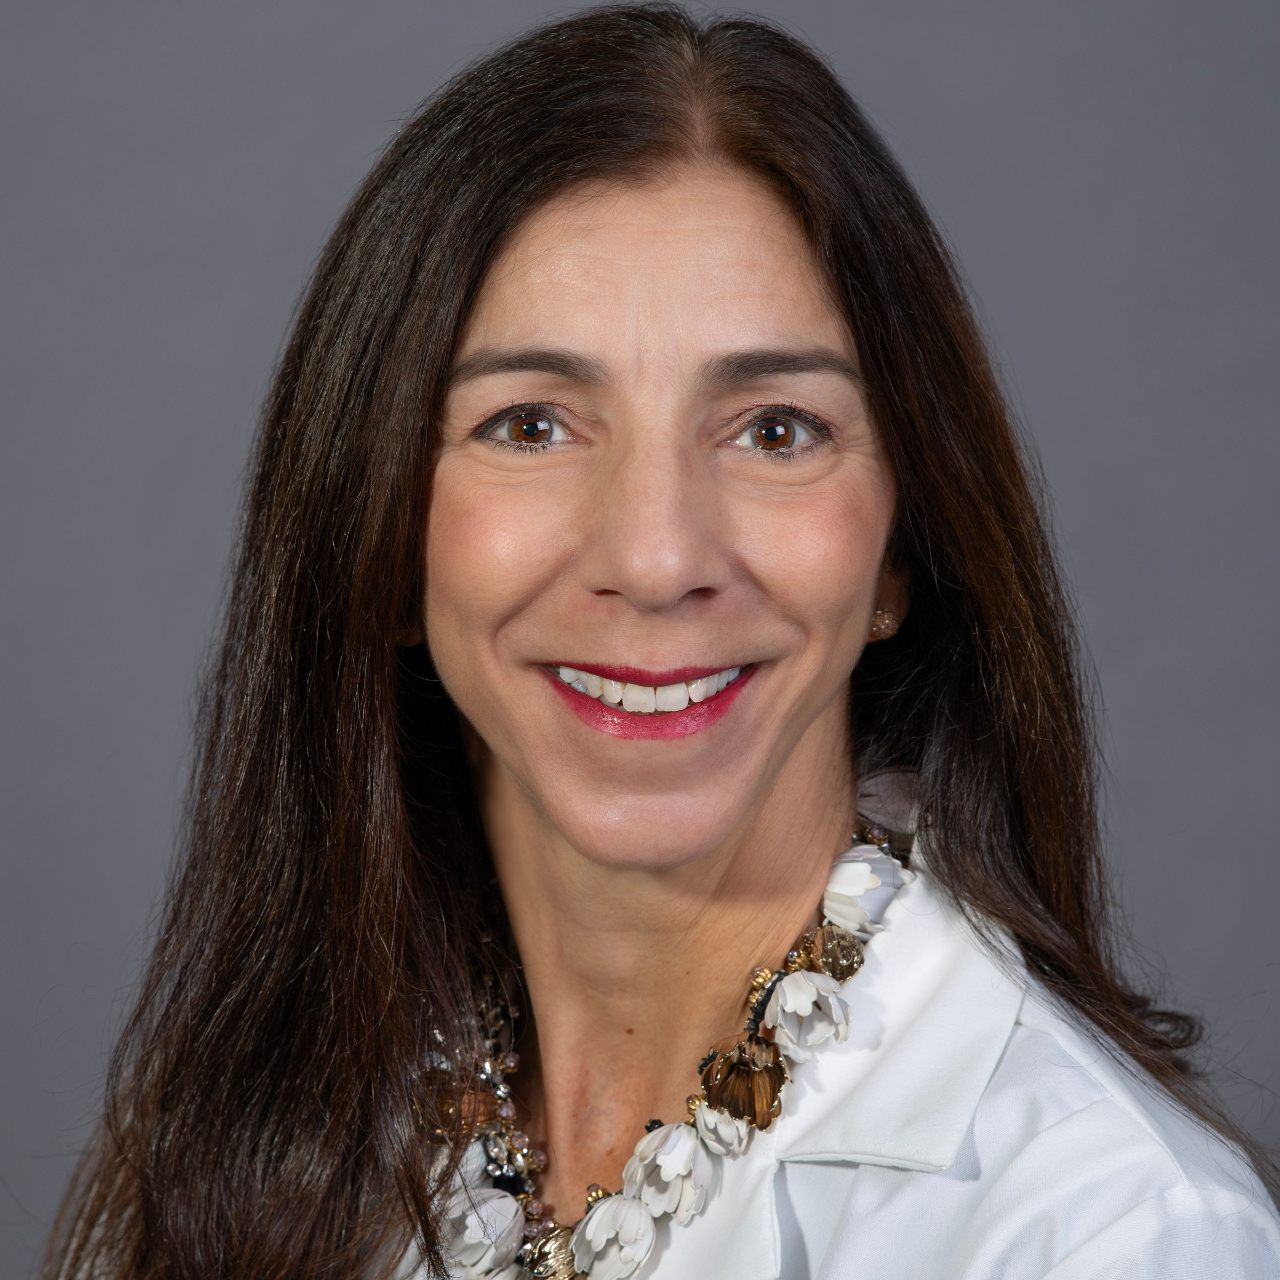 Marisa A. Mastropietro, MD FACOG